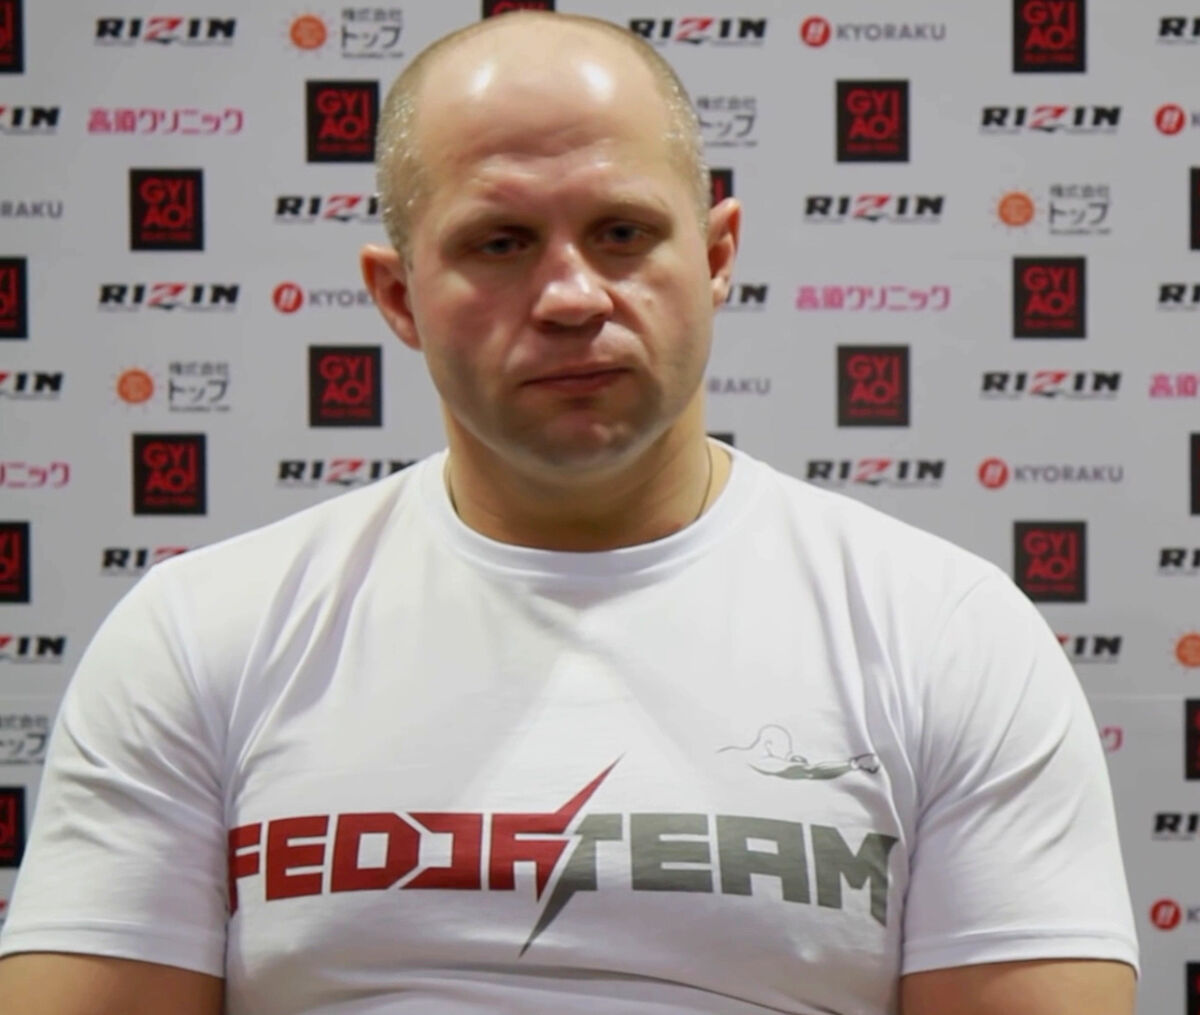 Fedor Emelianenko - Famous Mixed Martial Artist